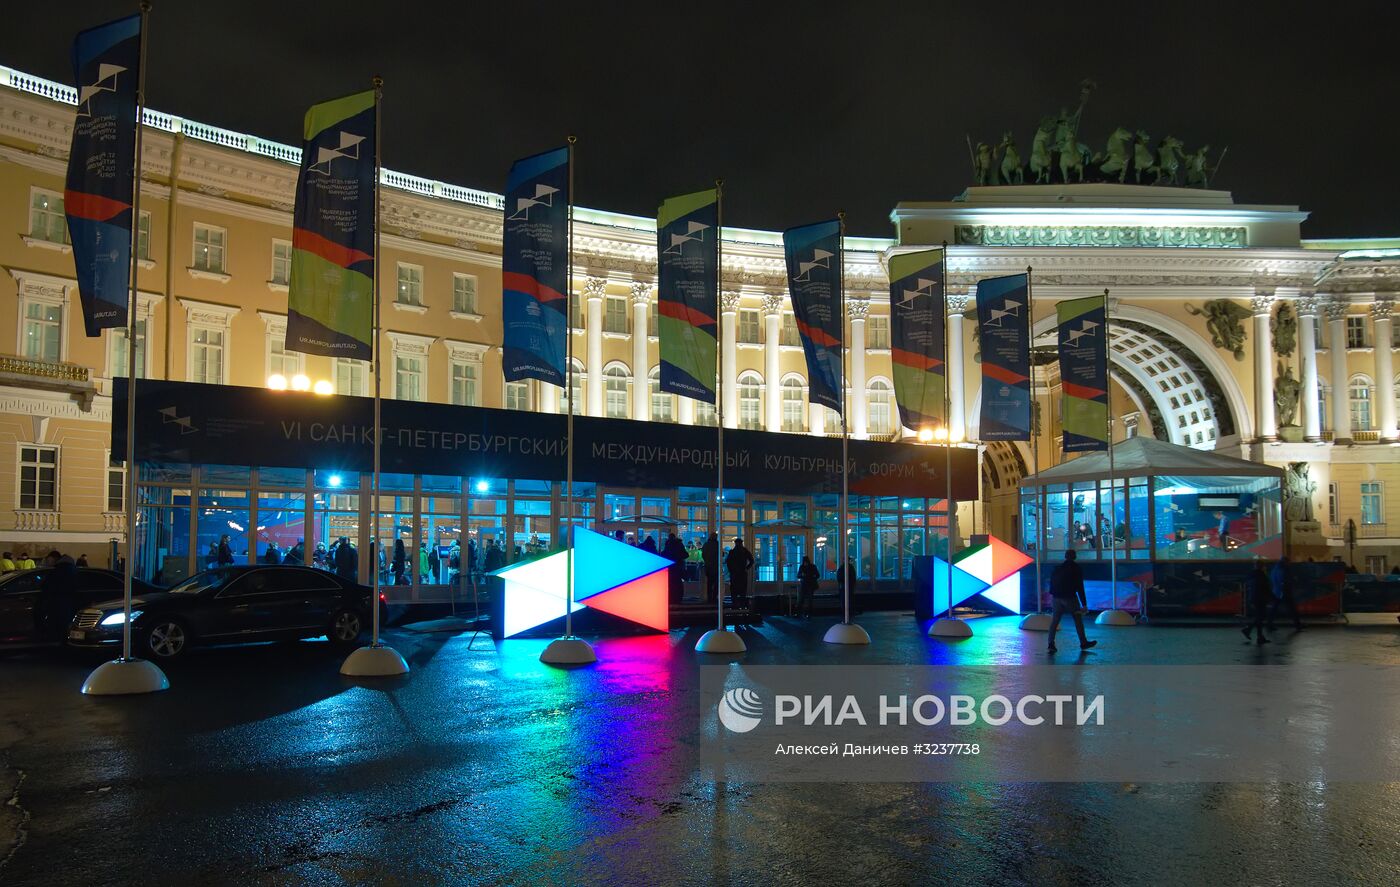 VI Санкт-Петербургский международный культурный форум